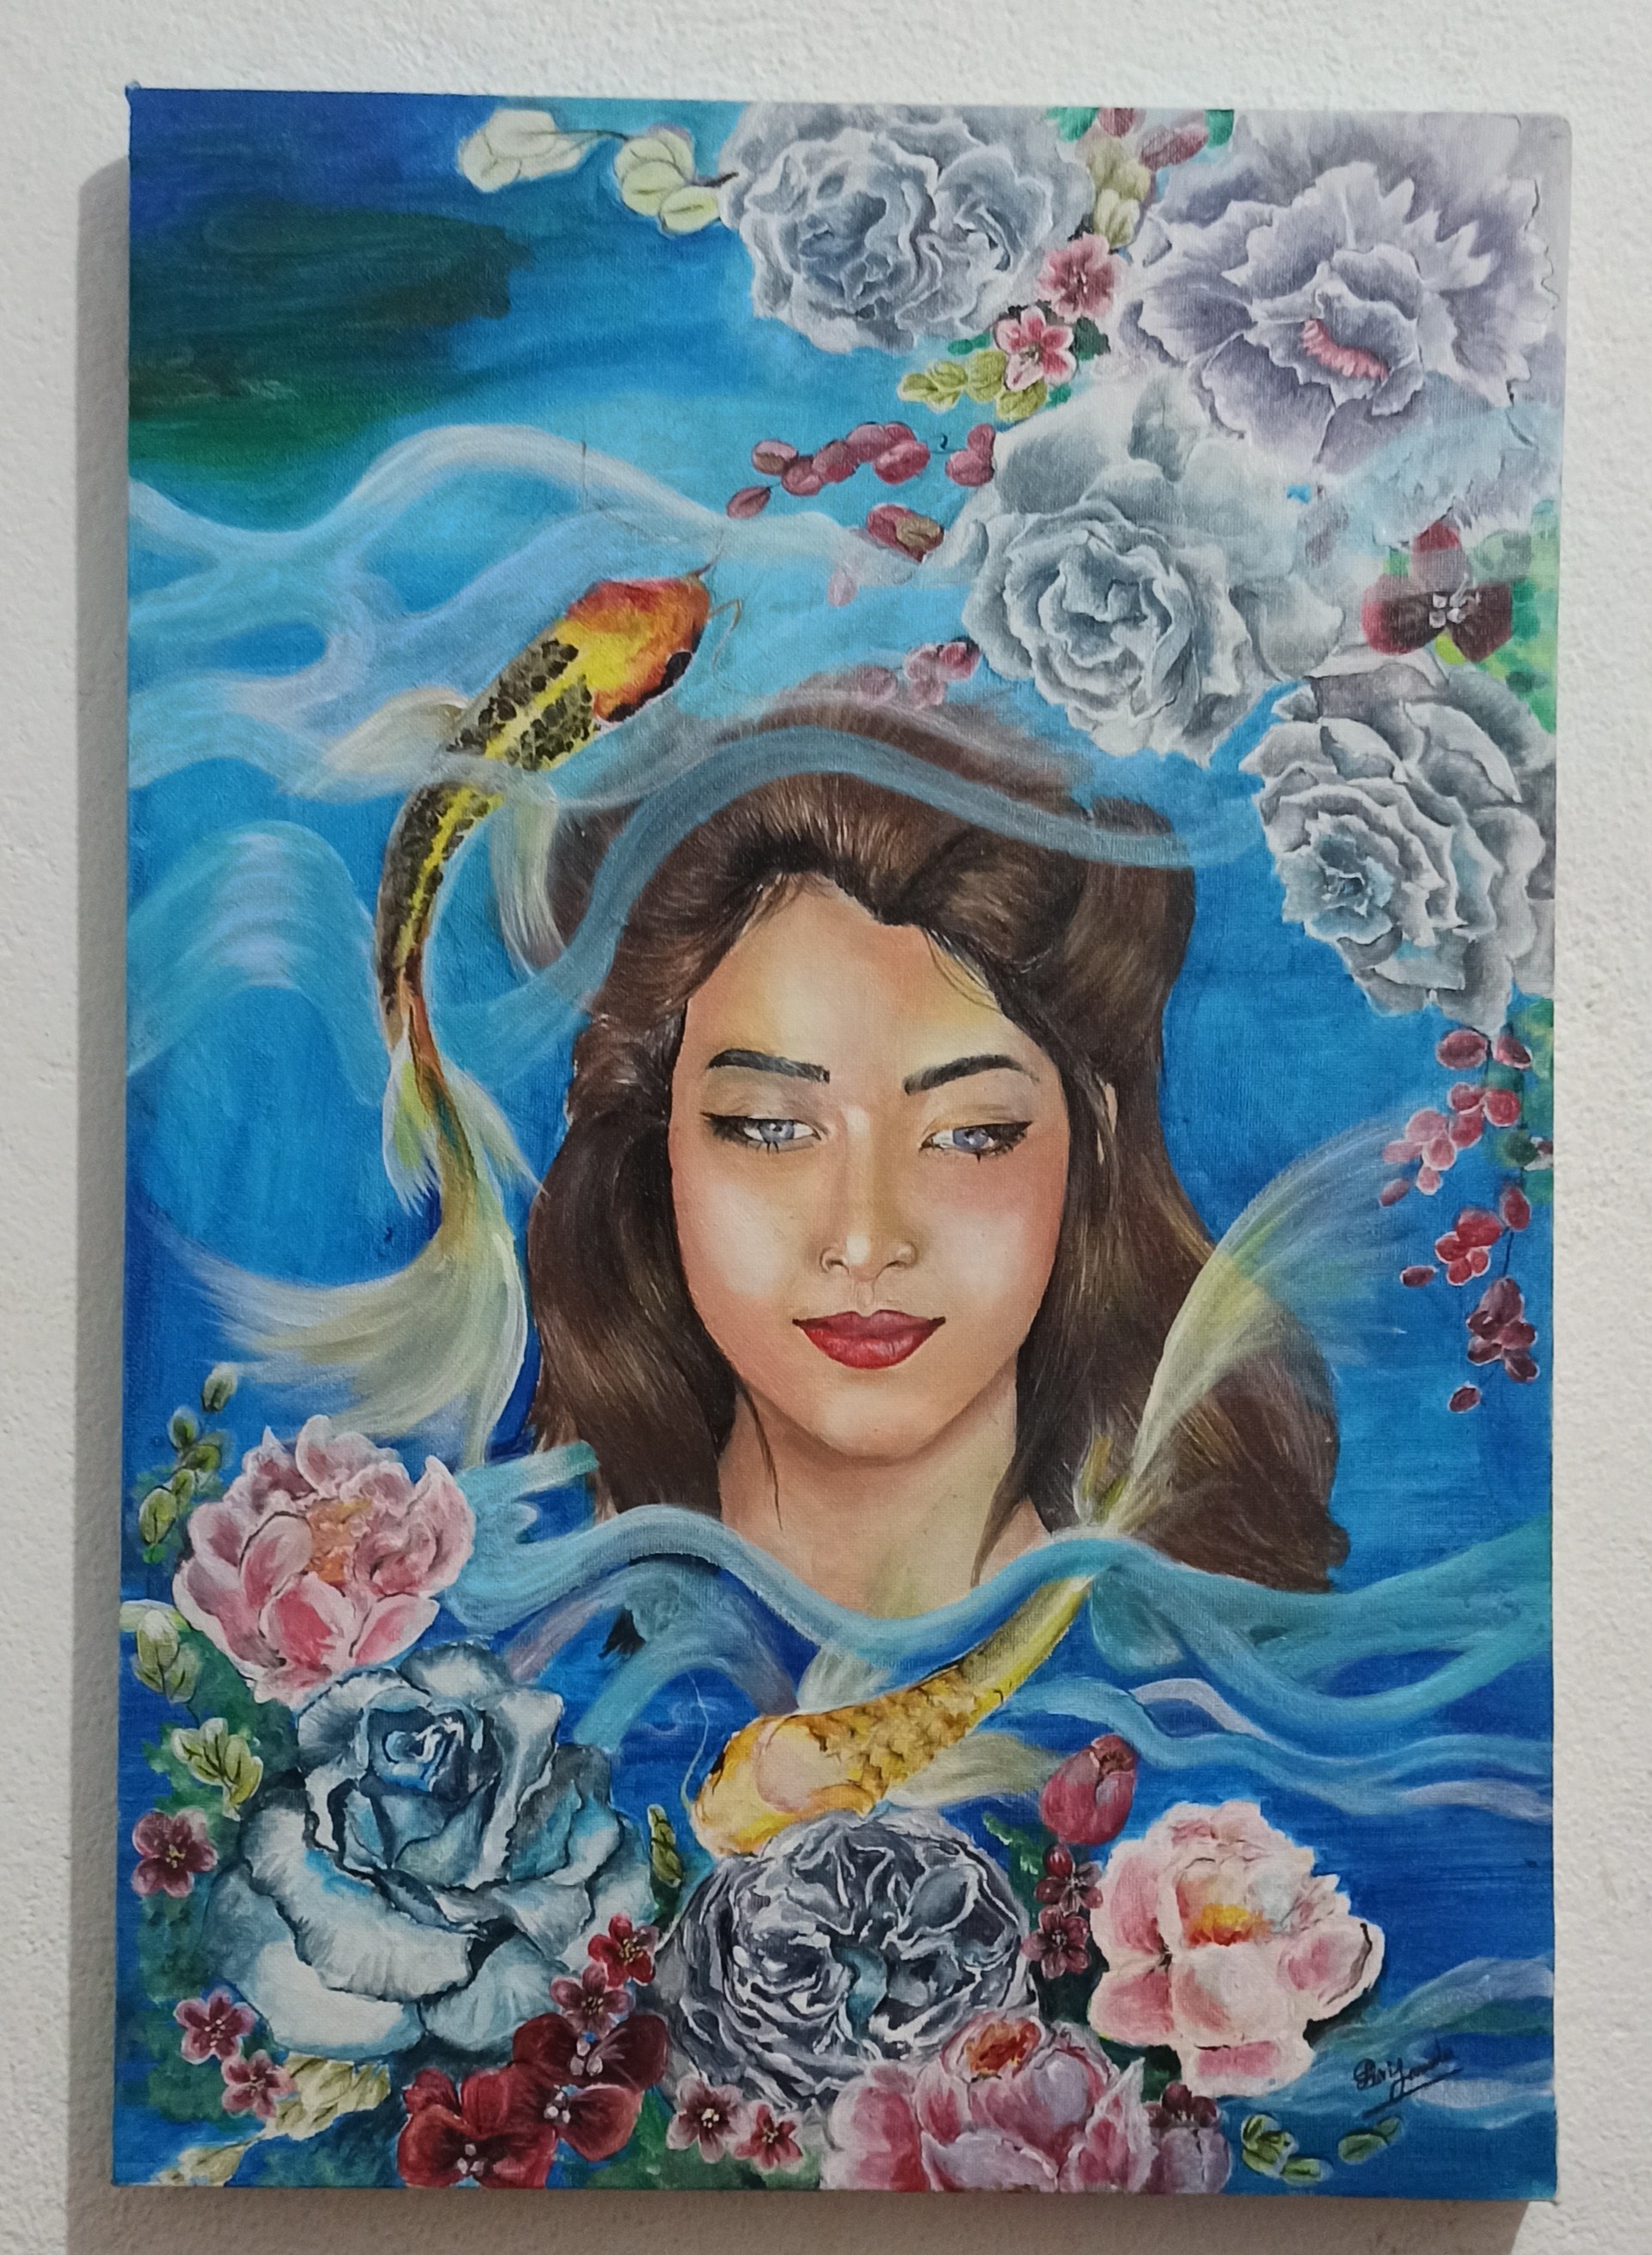 Yara-the water lady by Isuri Janendra